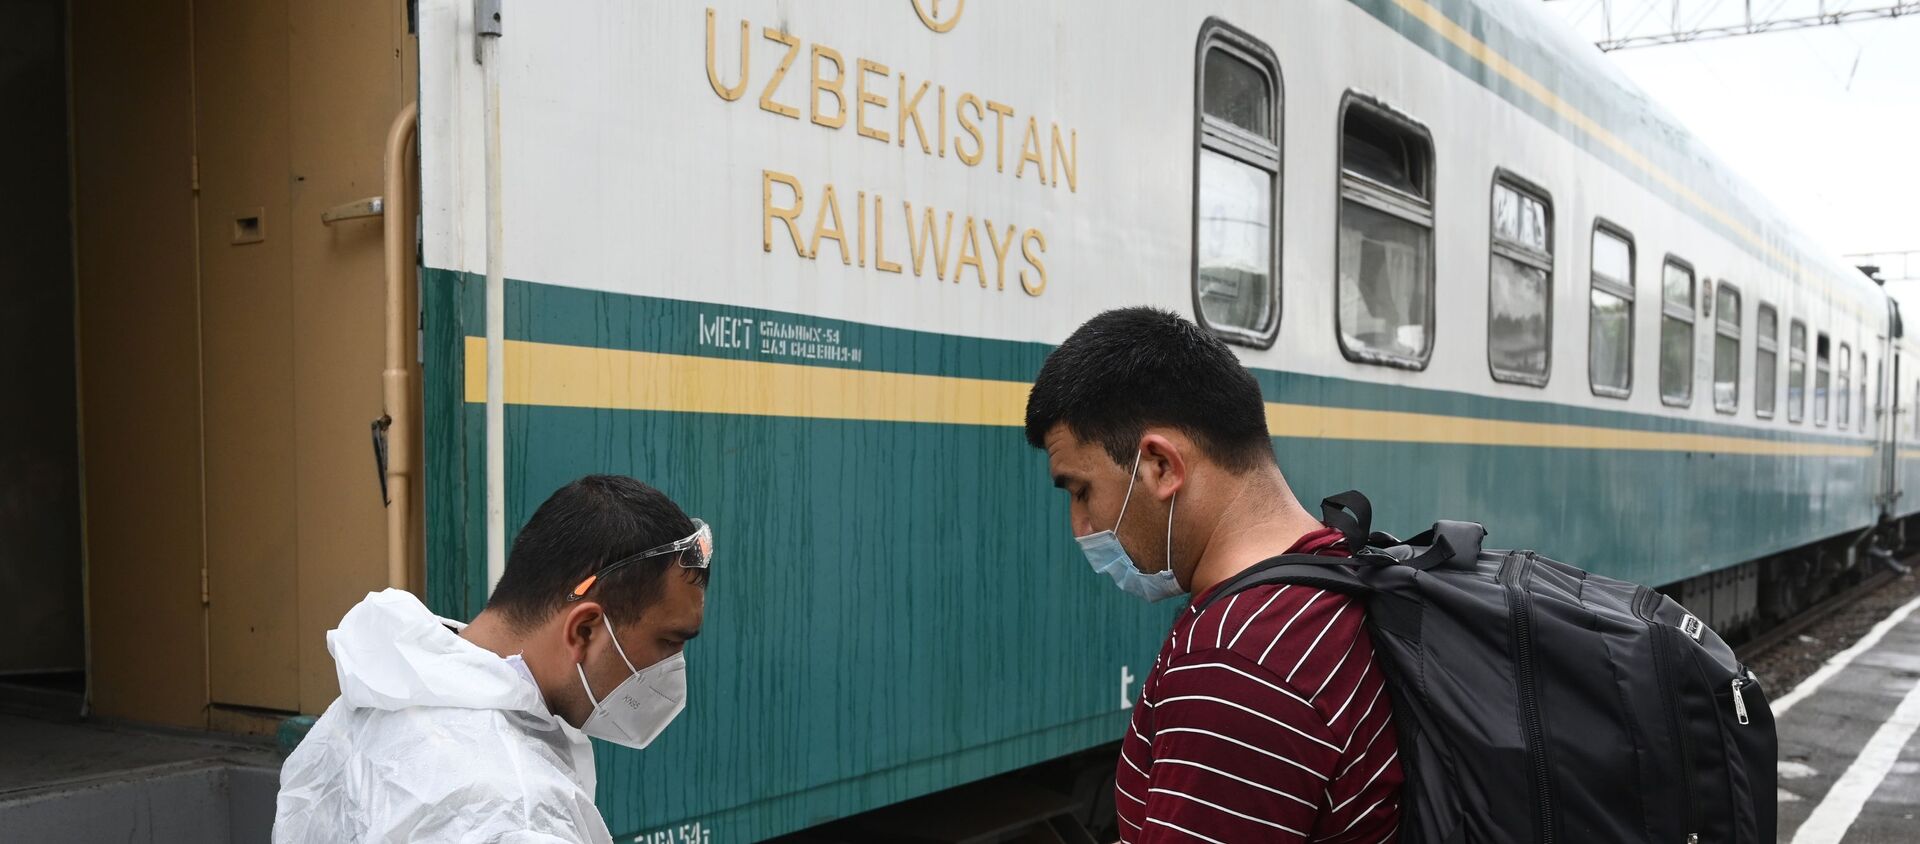  Проверка документов во время посадки граждан Узбекистана на поезд. Архивное фото - Sputnik Кыргызстан, 1920, 20.03.2021